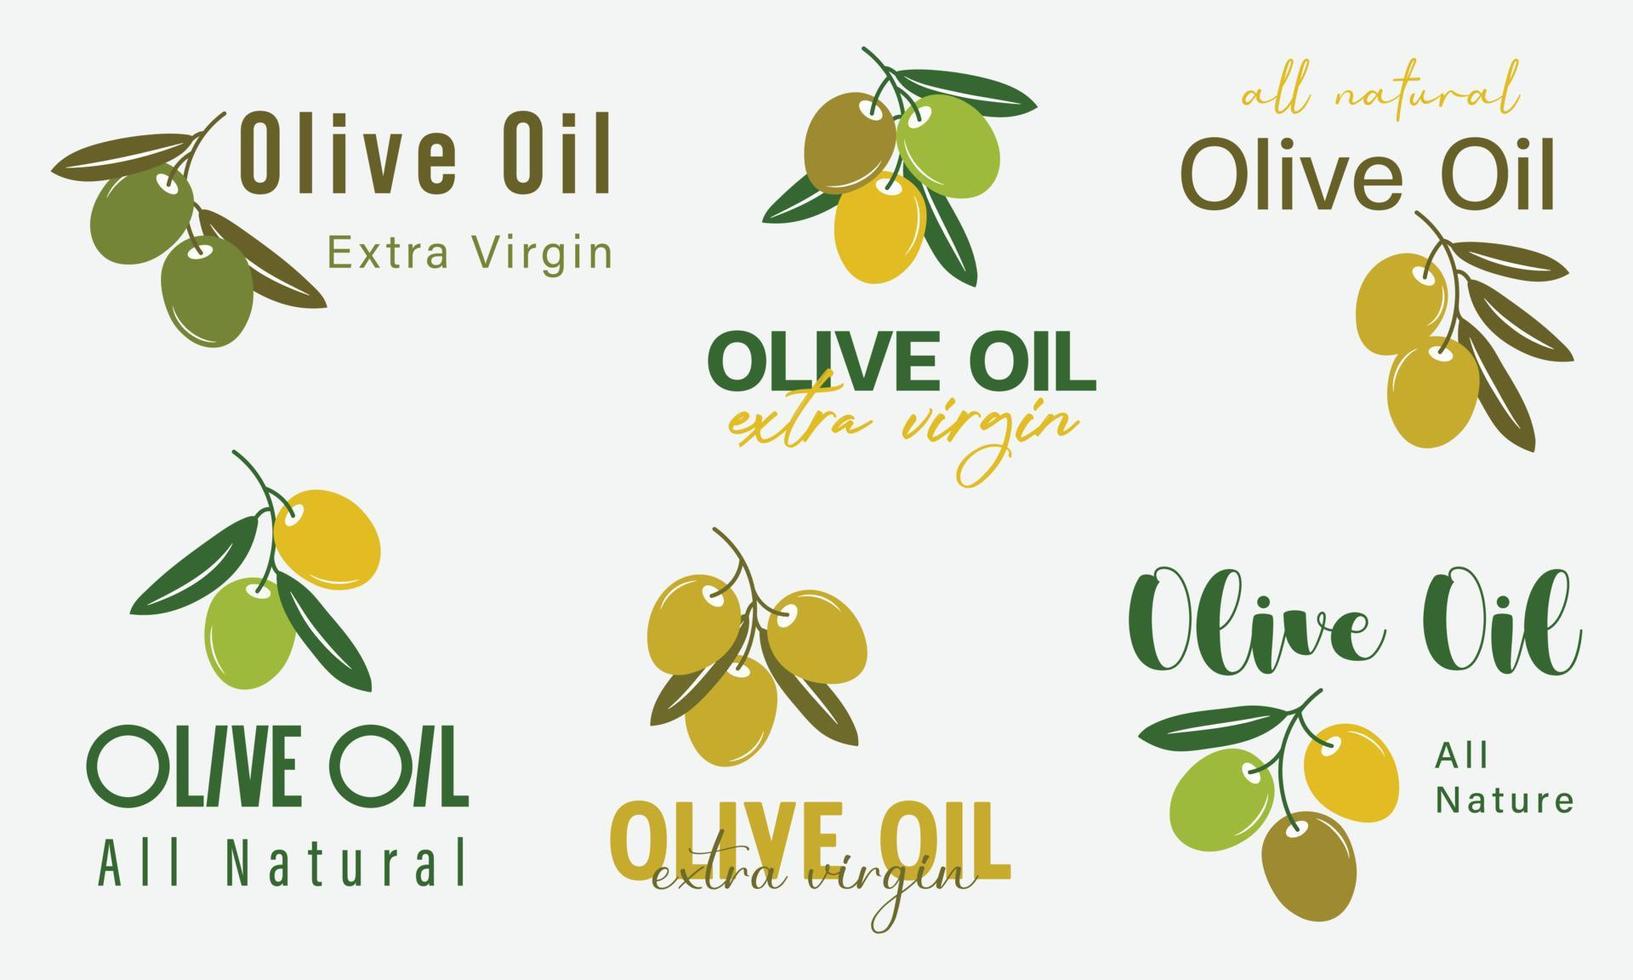 produits biologiques et naturels pour l'enseigne, les étiquettes, les autocollants, les badges et le logo de l'huile d'olive. vecteur